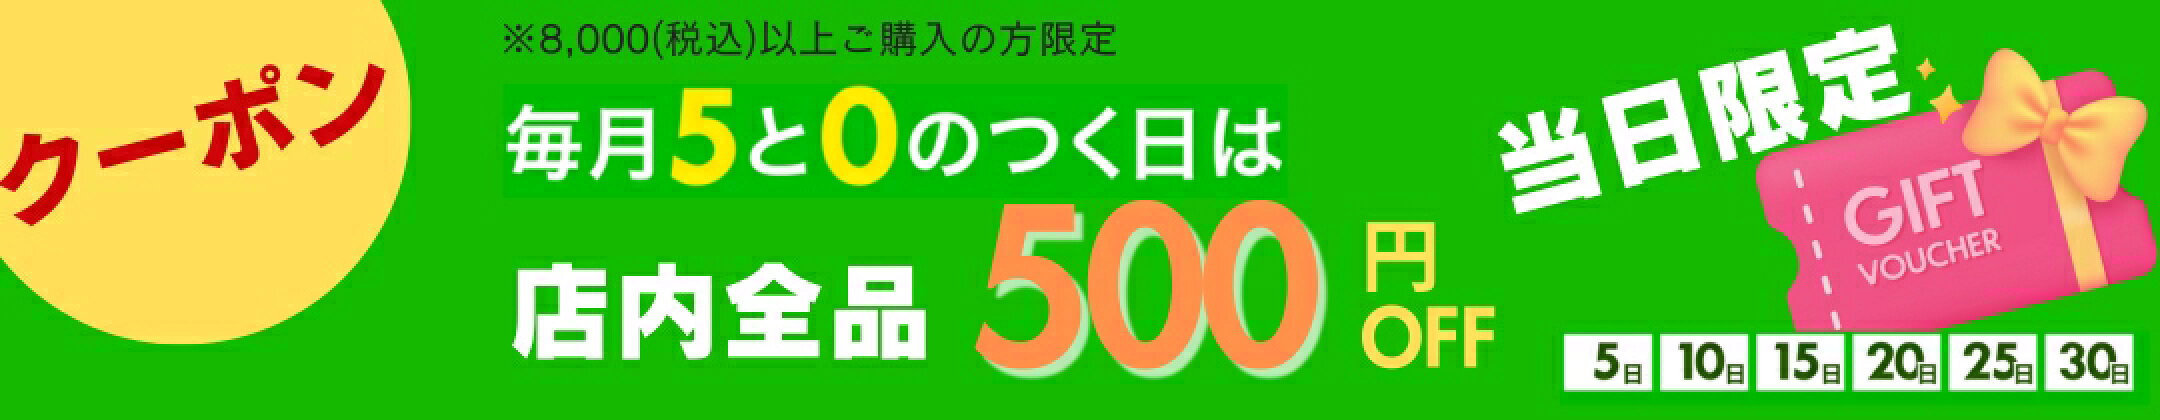 【20日】5と10のつく日 500円OFF